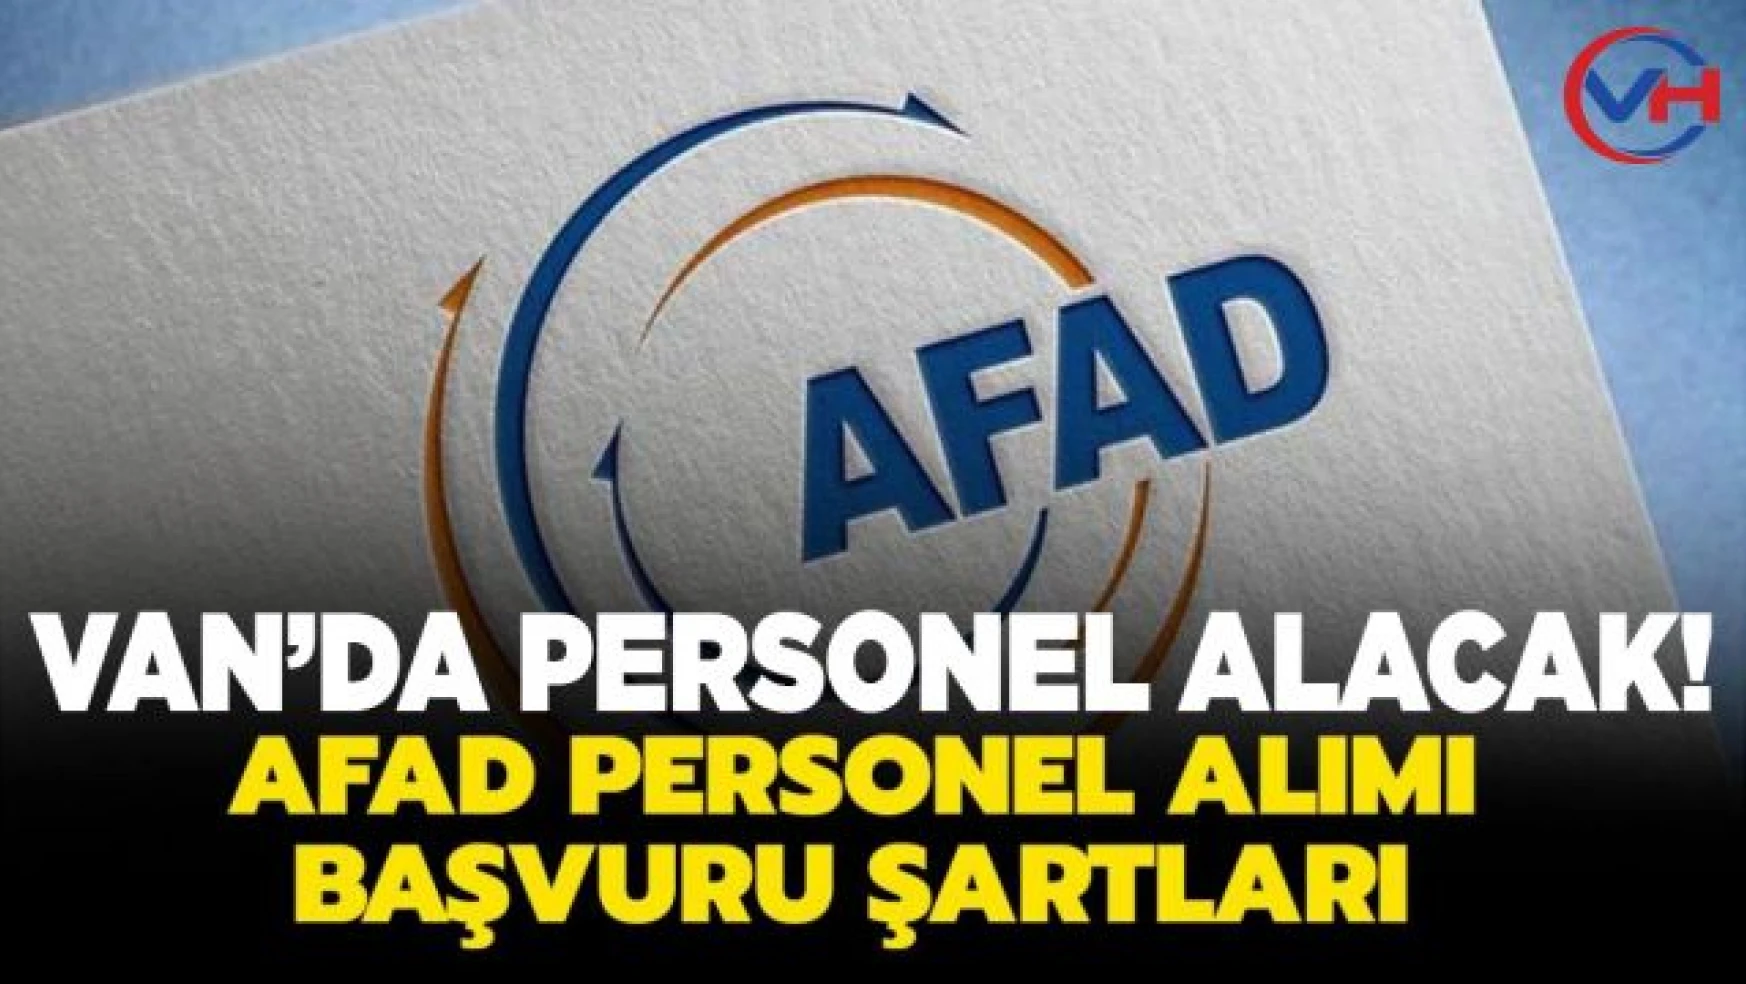 AFAD Van'da sözleşmeli personel alacak!